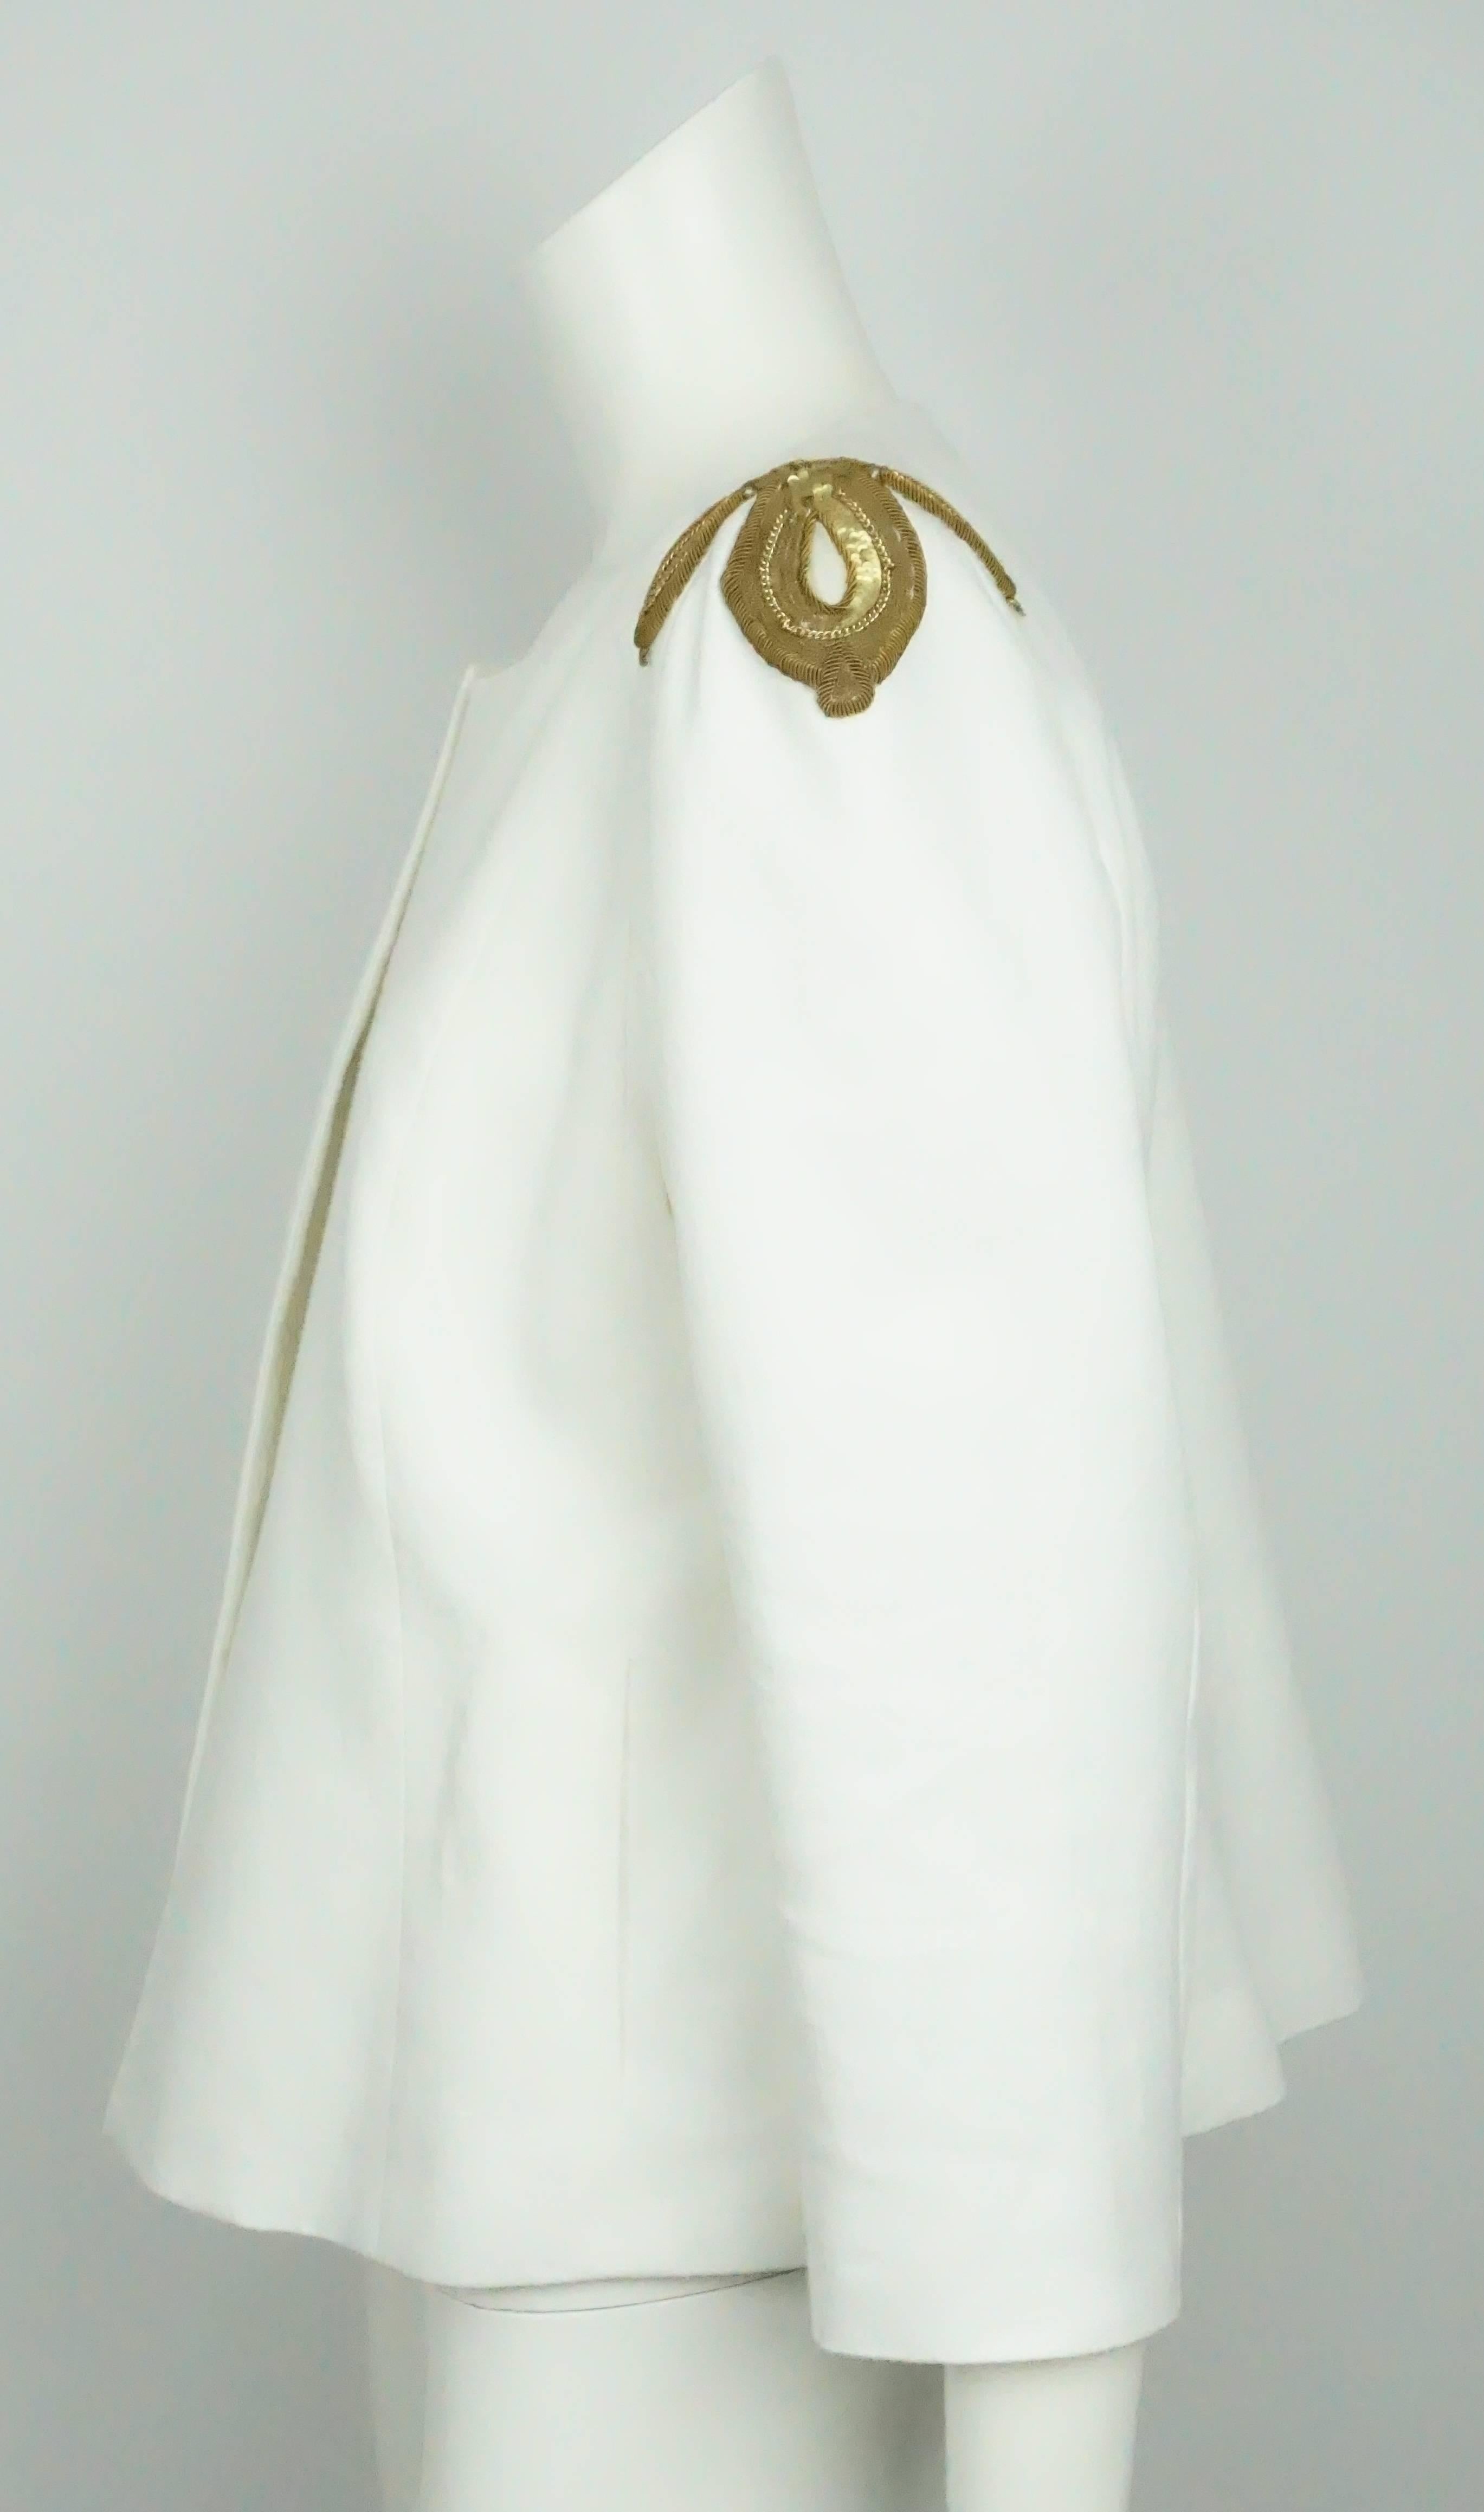 Veste Style Paris en lin blanc avec paillettes dorées sur les épaules - 42 - NWT  Cette veste très élégante et classique est un must have pour l'été. Il est entièrement doublé, ne se ferme pas sur le devant et comporte des appliques dorées sur les